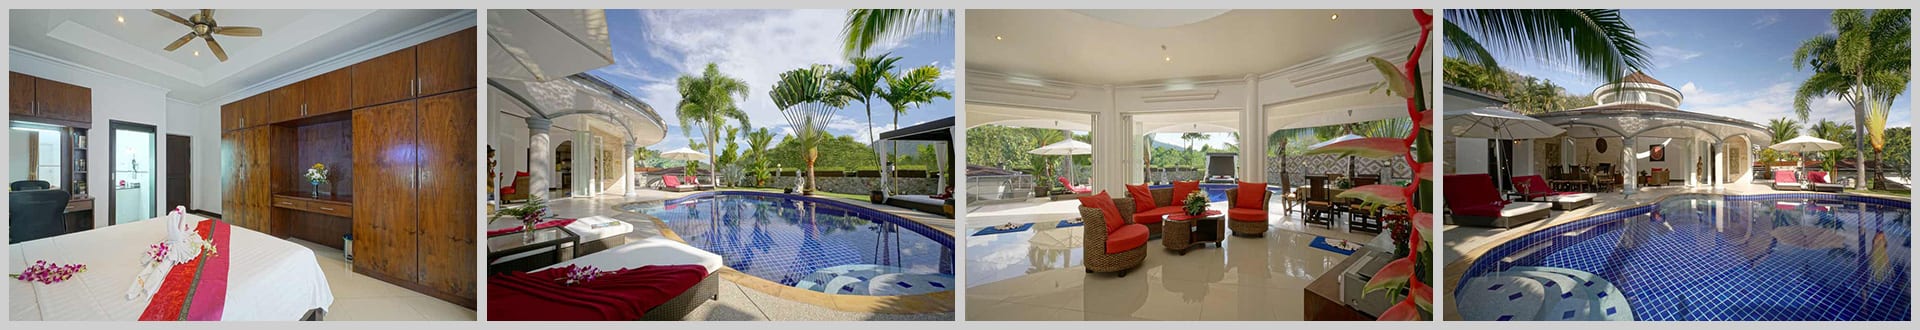 Lotus Luxury Pool Villa Phuket